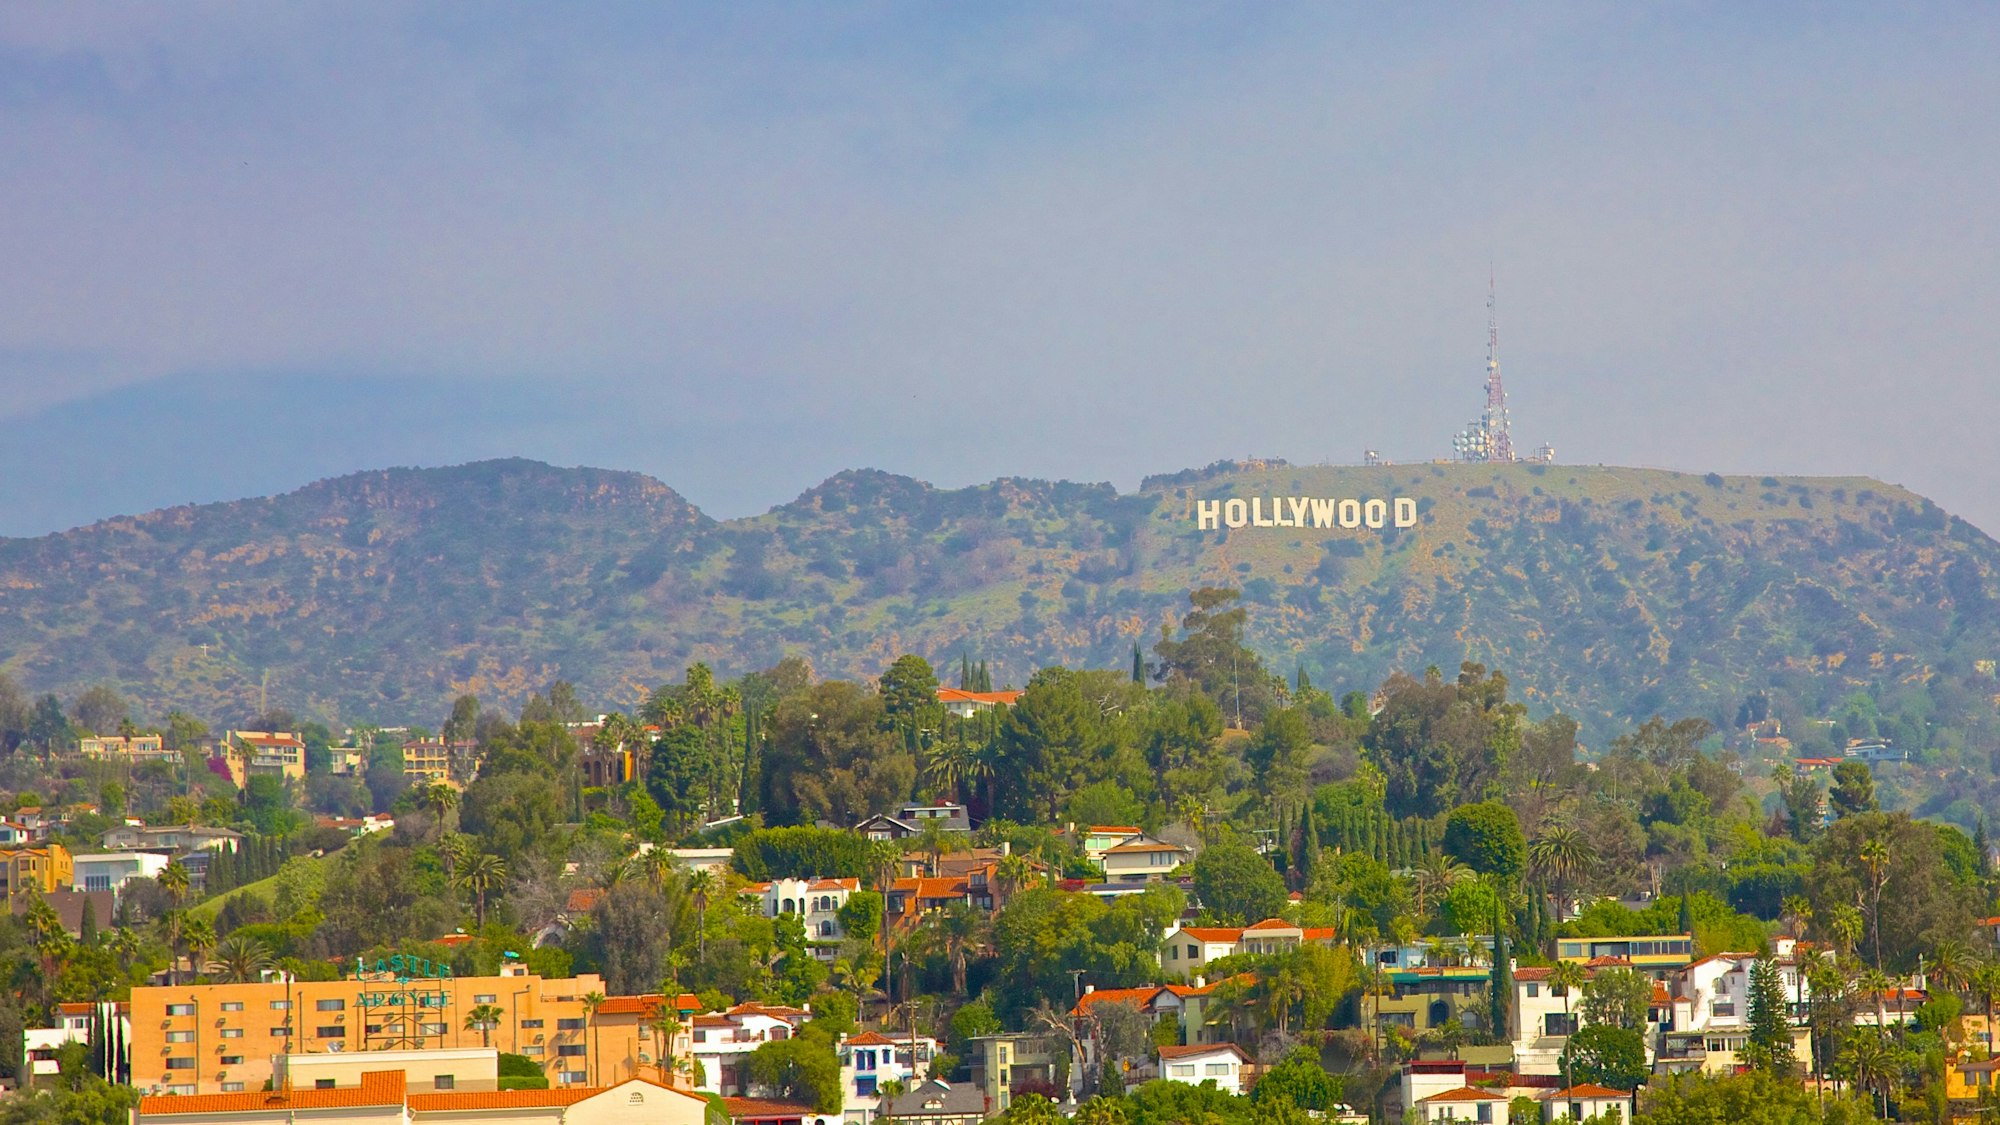 Panorama-Aufnahme von Los Angeles: Das Hollywood-Zeichen ist im Hintergrund zu sehen. Im Vordergrund sieht man zahlreiche Bäume und Häuser.